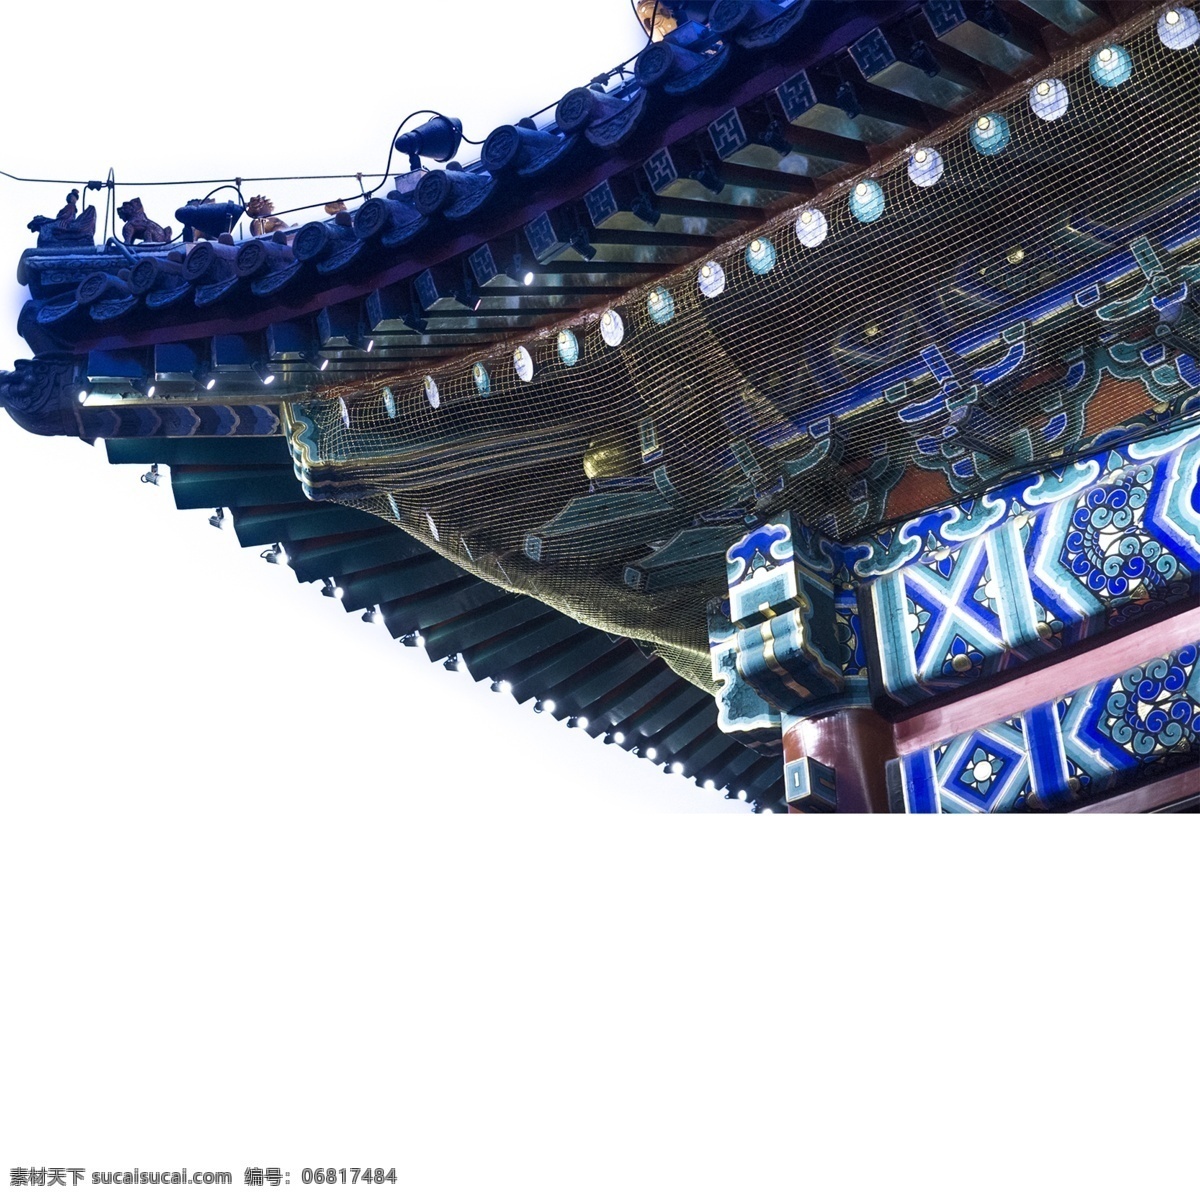 中国 传统文化 风 古典 房檐 传统 文化 中国风 房屋 红色 蓝色 庄重 庄严 古朴 大气 立体 怀旧 古风